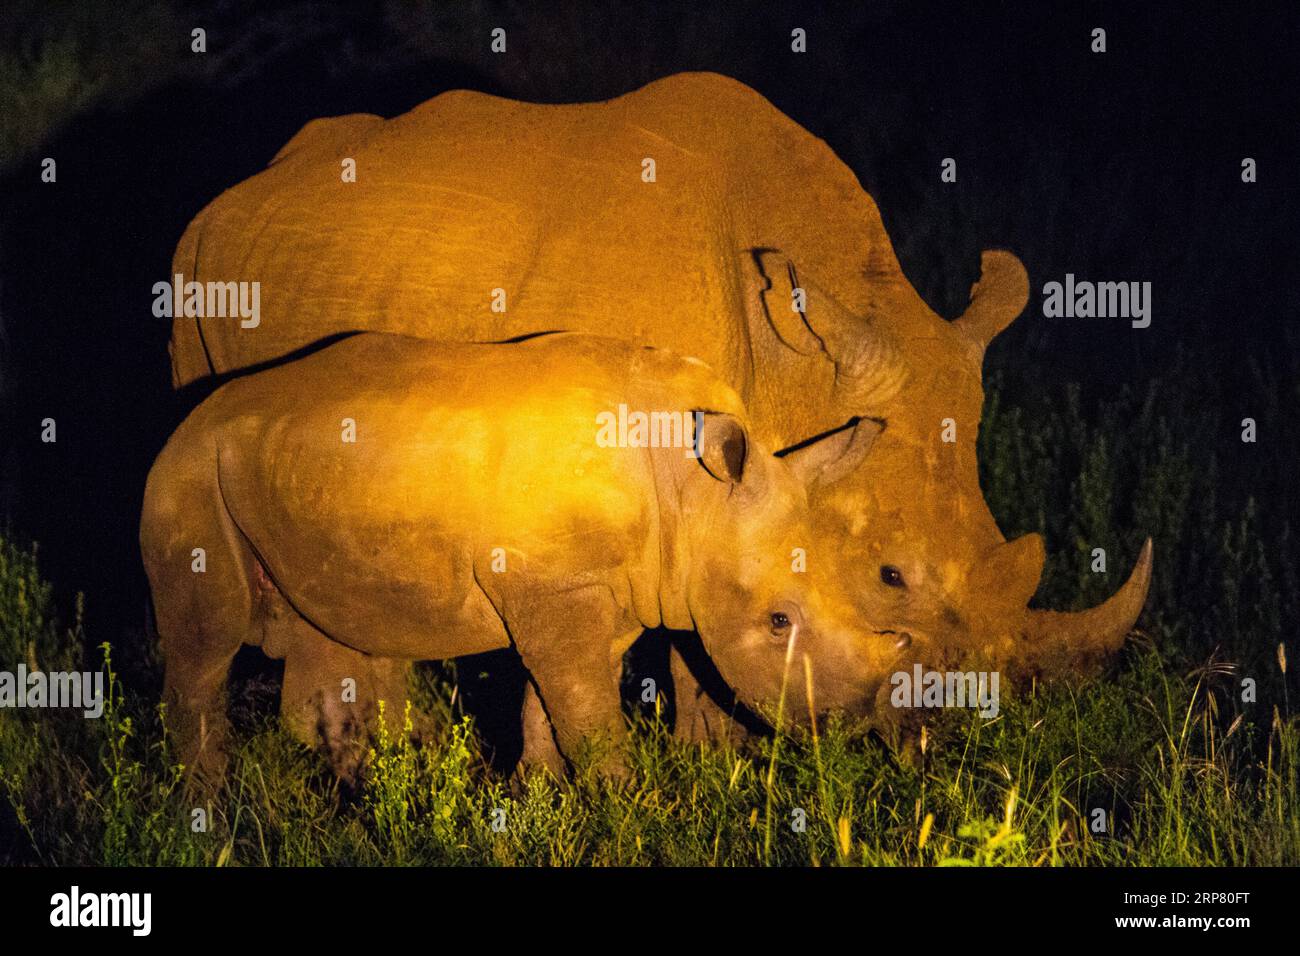 White rhino with young white rhino, night shot, Madikwe Game Reserve, Zeerust, South Africa Stock Photo